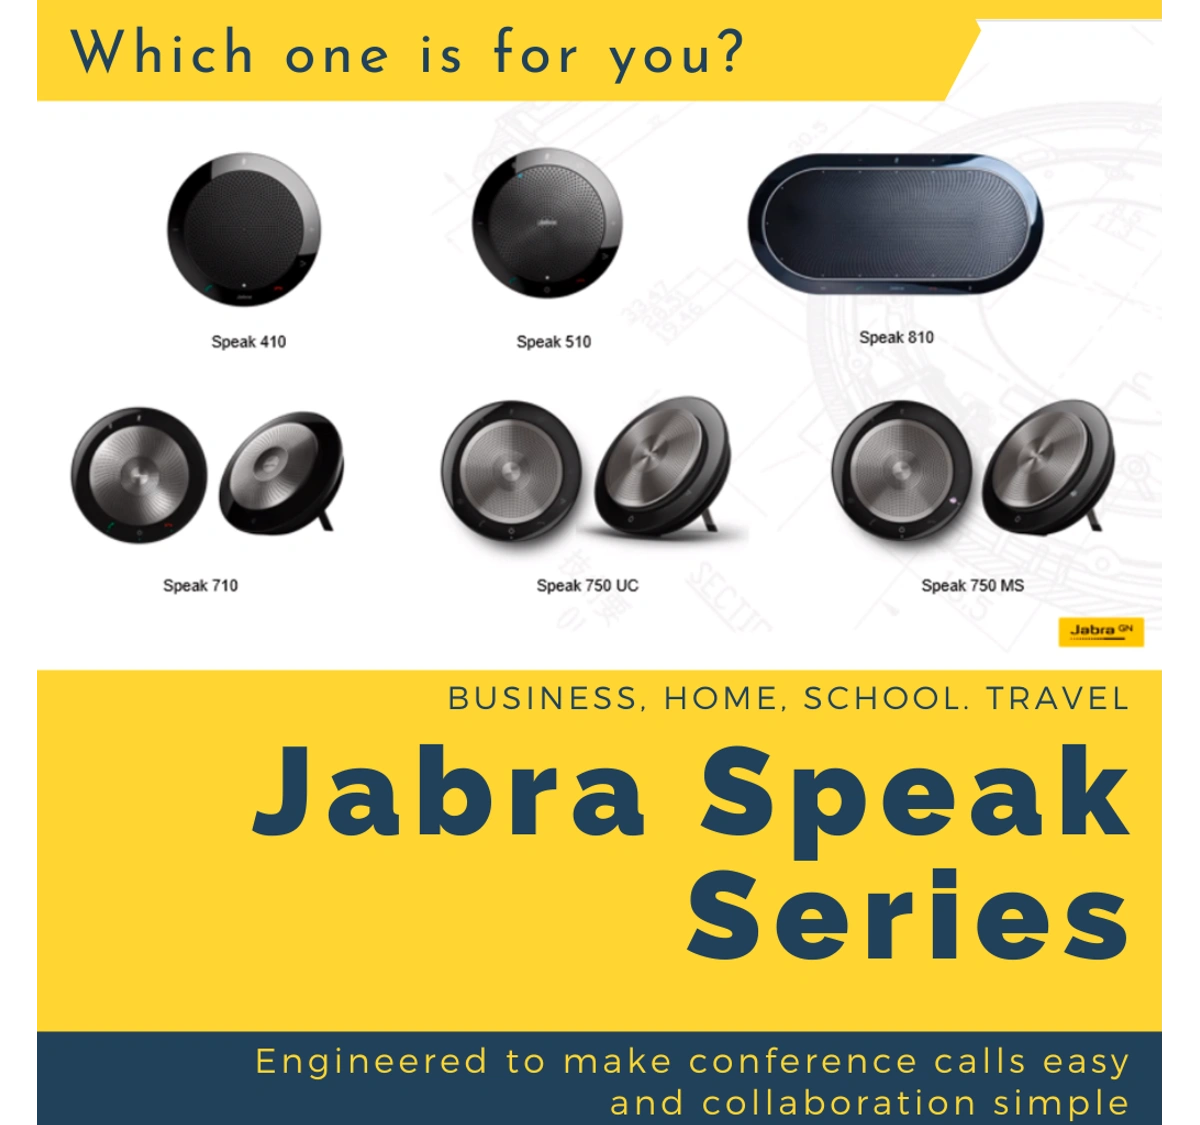 AUTHENTIC JABRA SPEAK SERIES SPEAKERPHONES (SPEAK 410, SPEAK 510